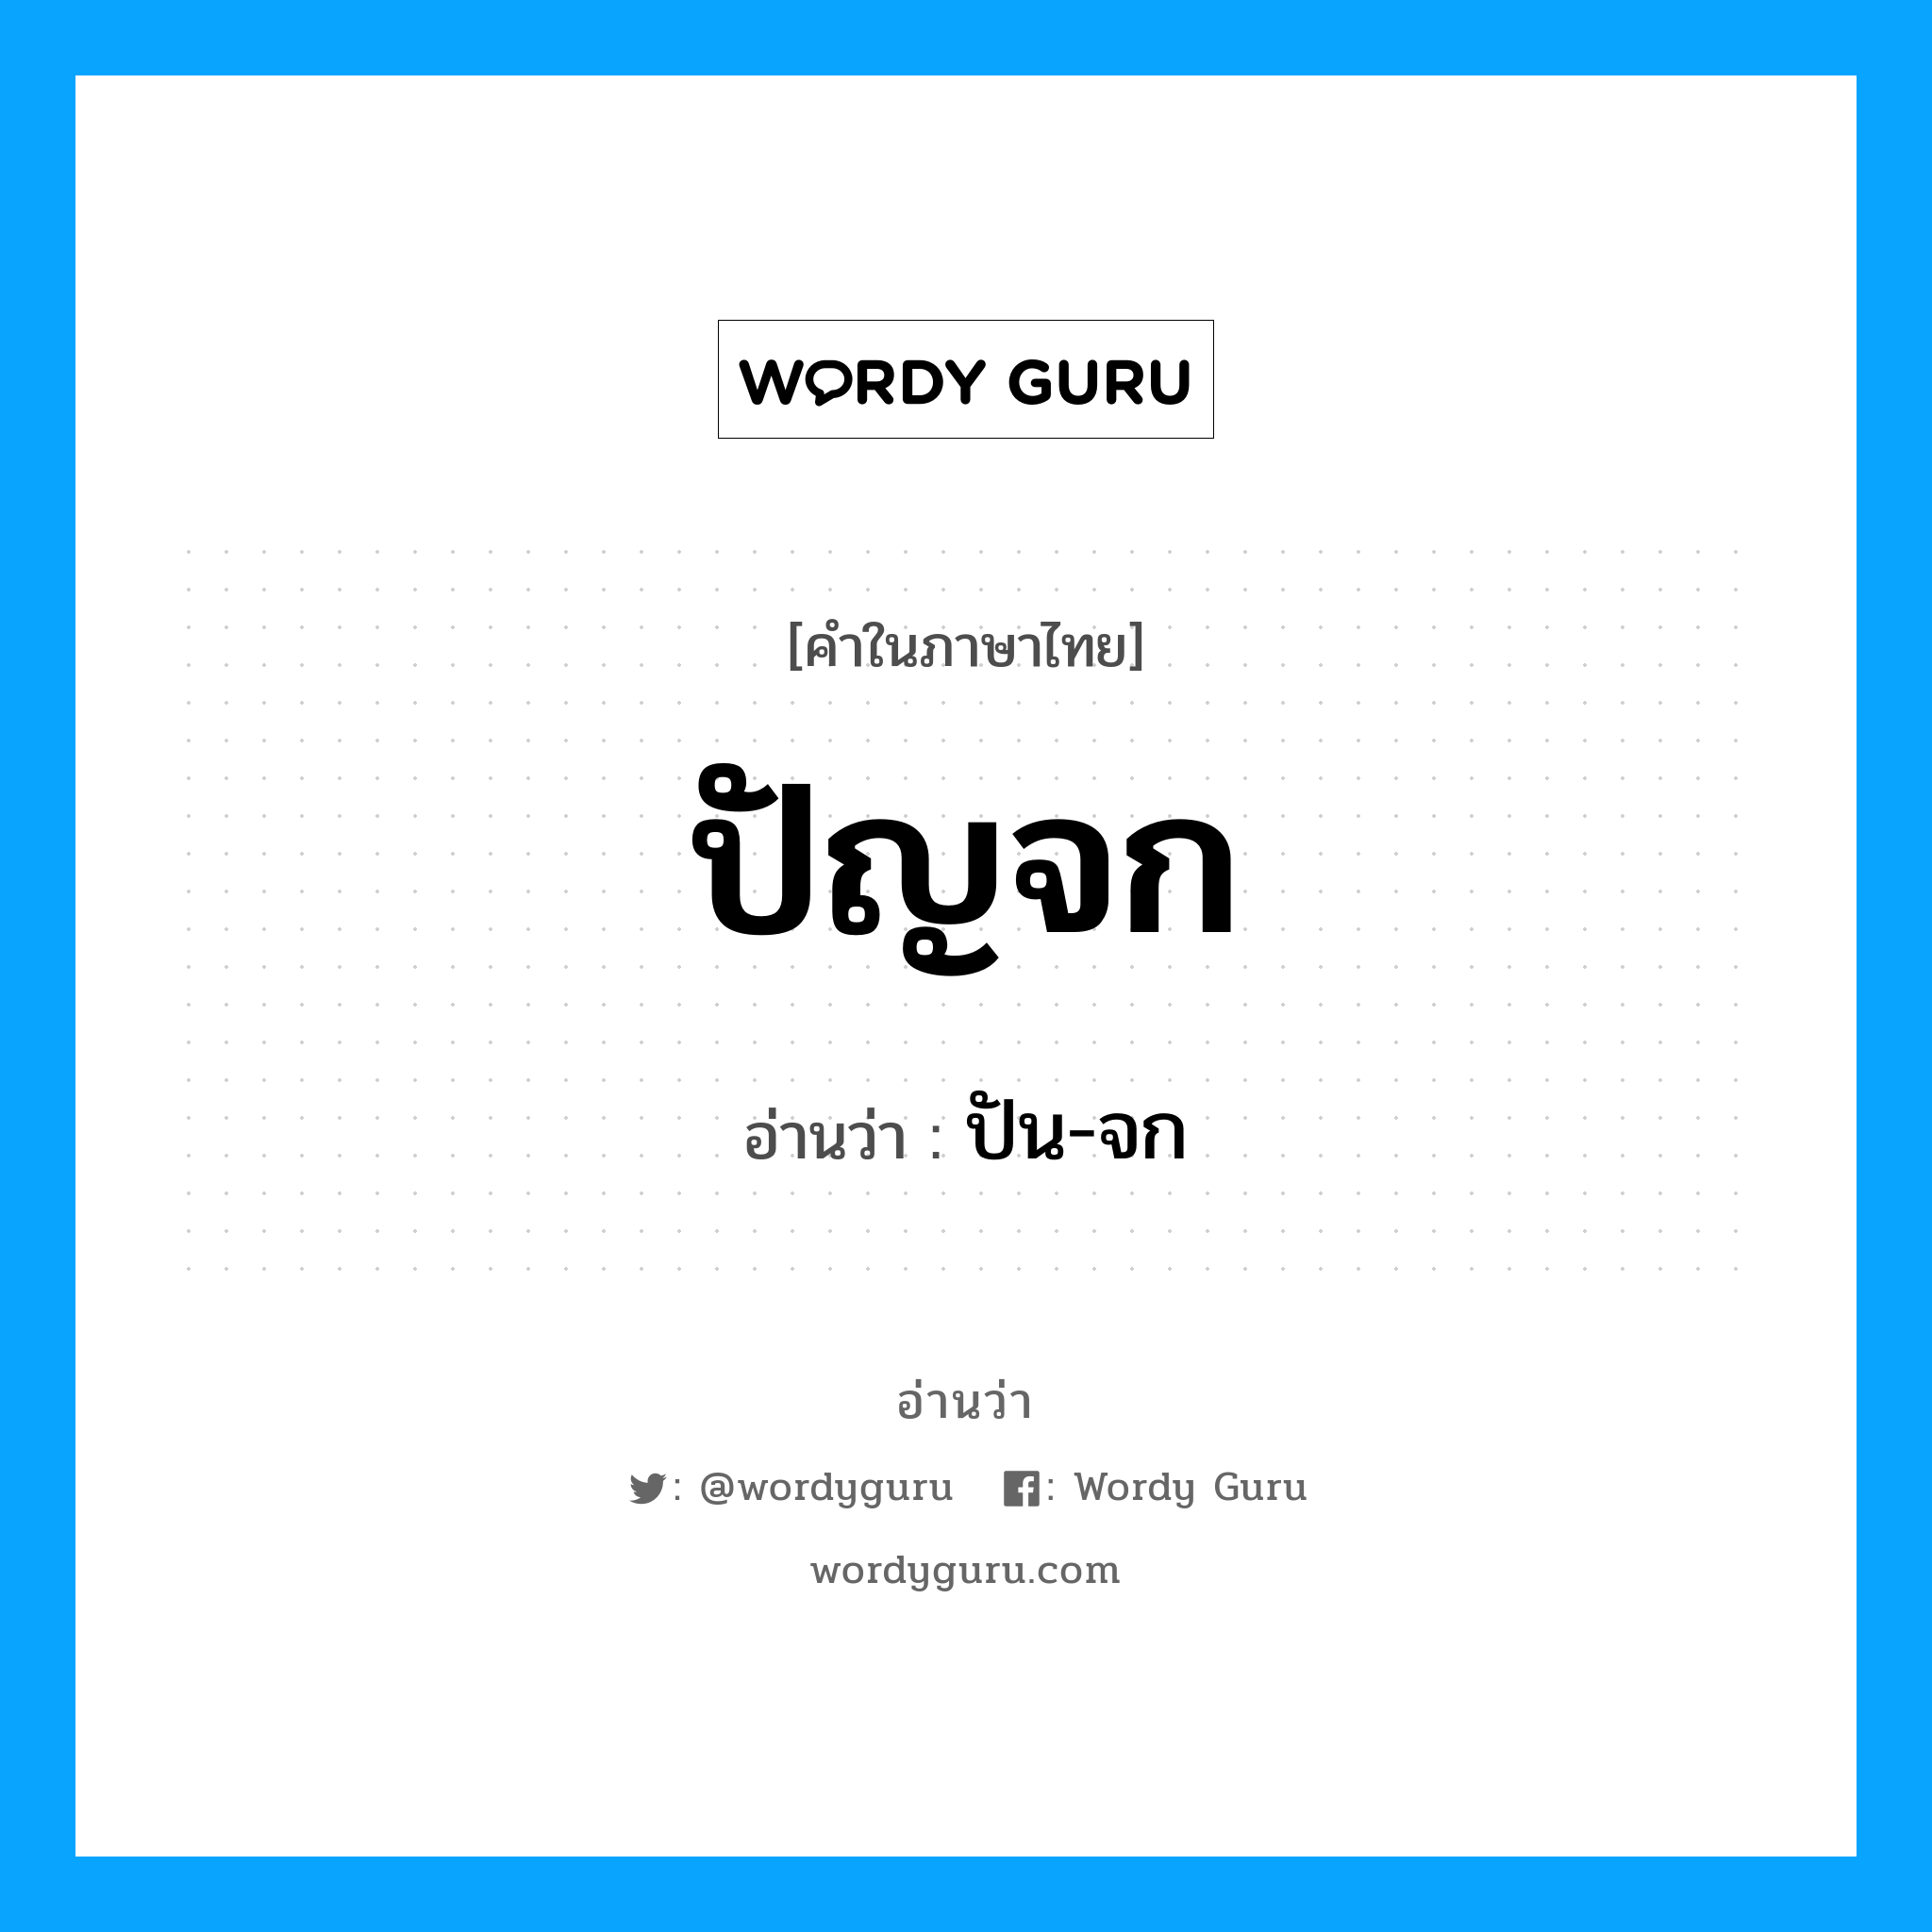 ปัน-จก เป็นคำอ่านของคำไหน?, คำในภาษาไทย ปัน-จก อ่านว่า ปัญจก